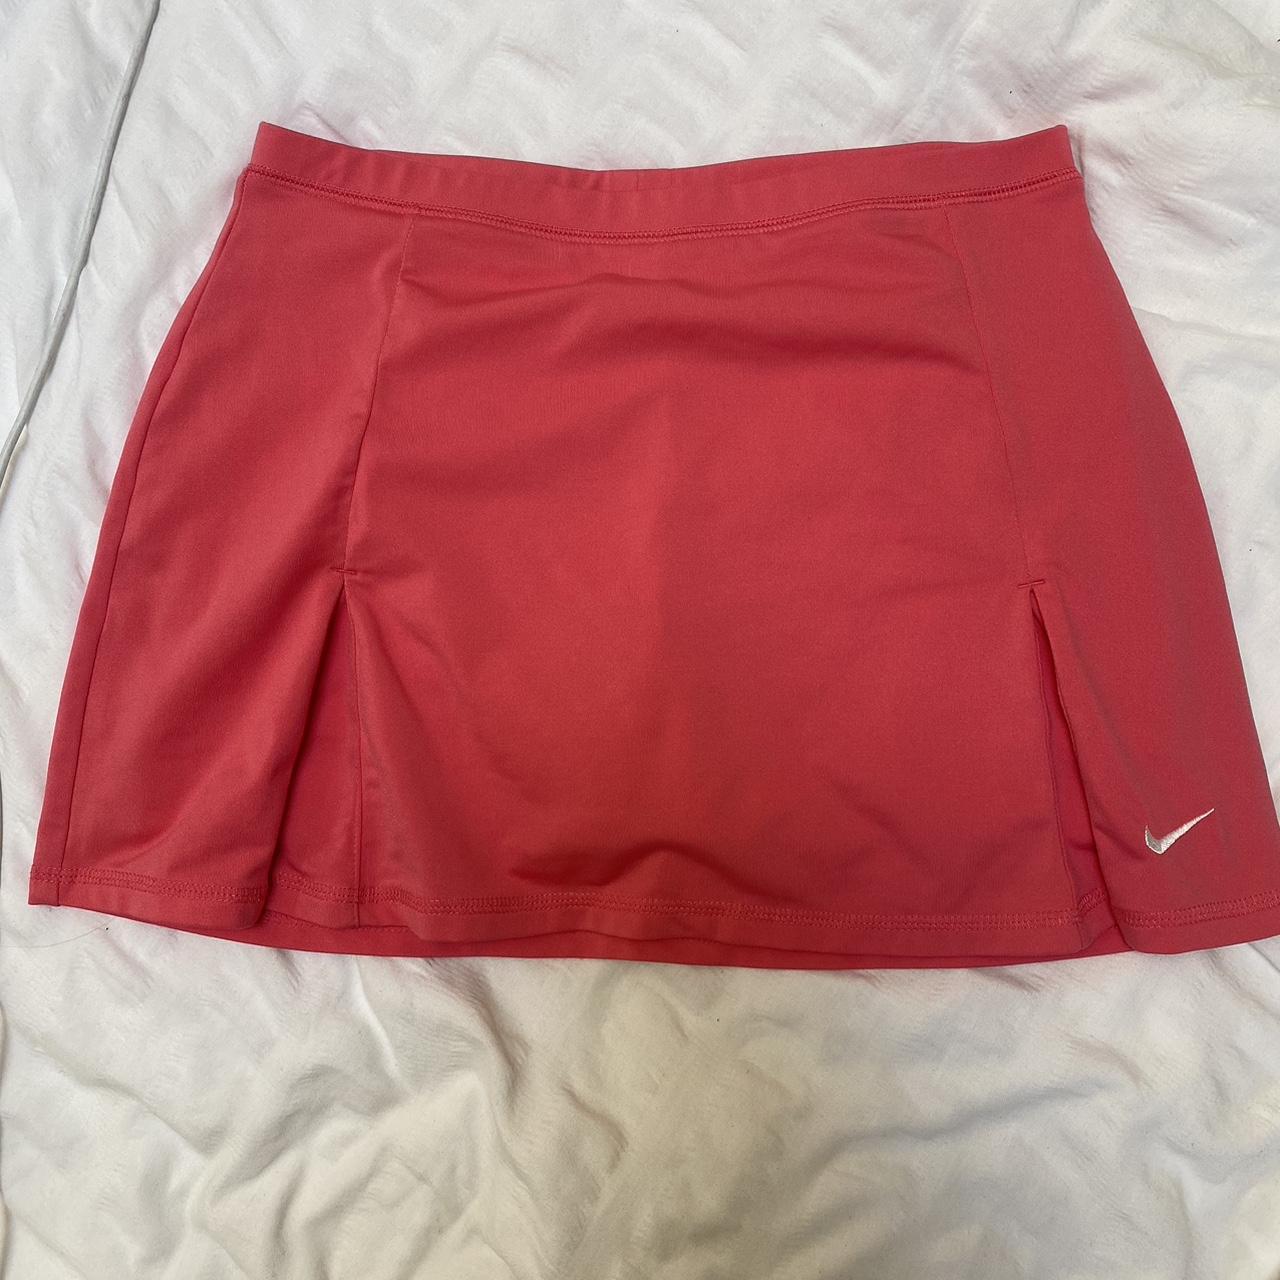 Nike tennis skirt Pink Size medium, will fit a... - Depop